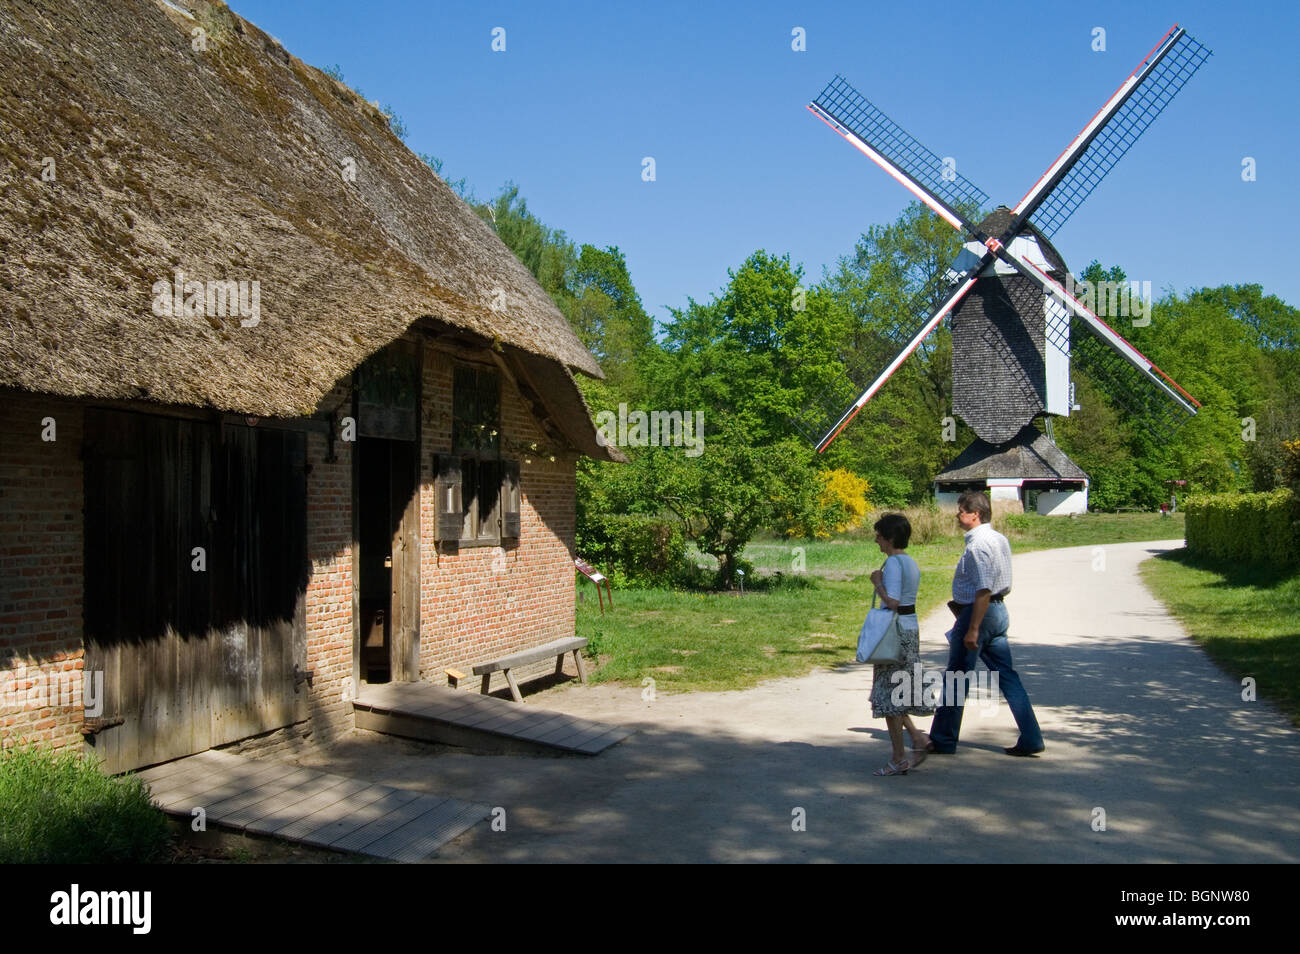 Il mulino a vento Standerd e i turisti in visita a una tradizionale casa colonica presso l'open air museum Bokrijk, Belgio Foto Stock